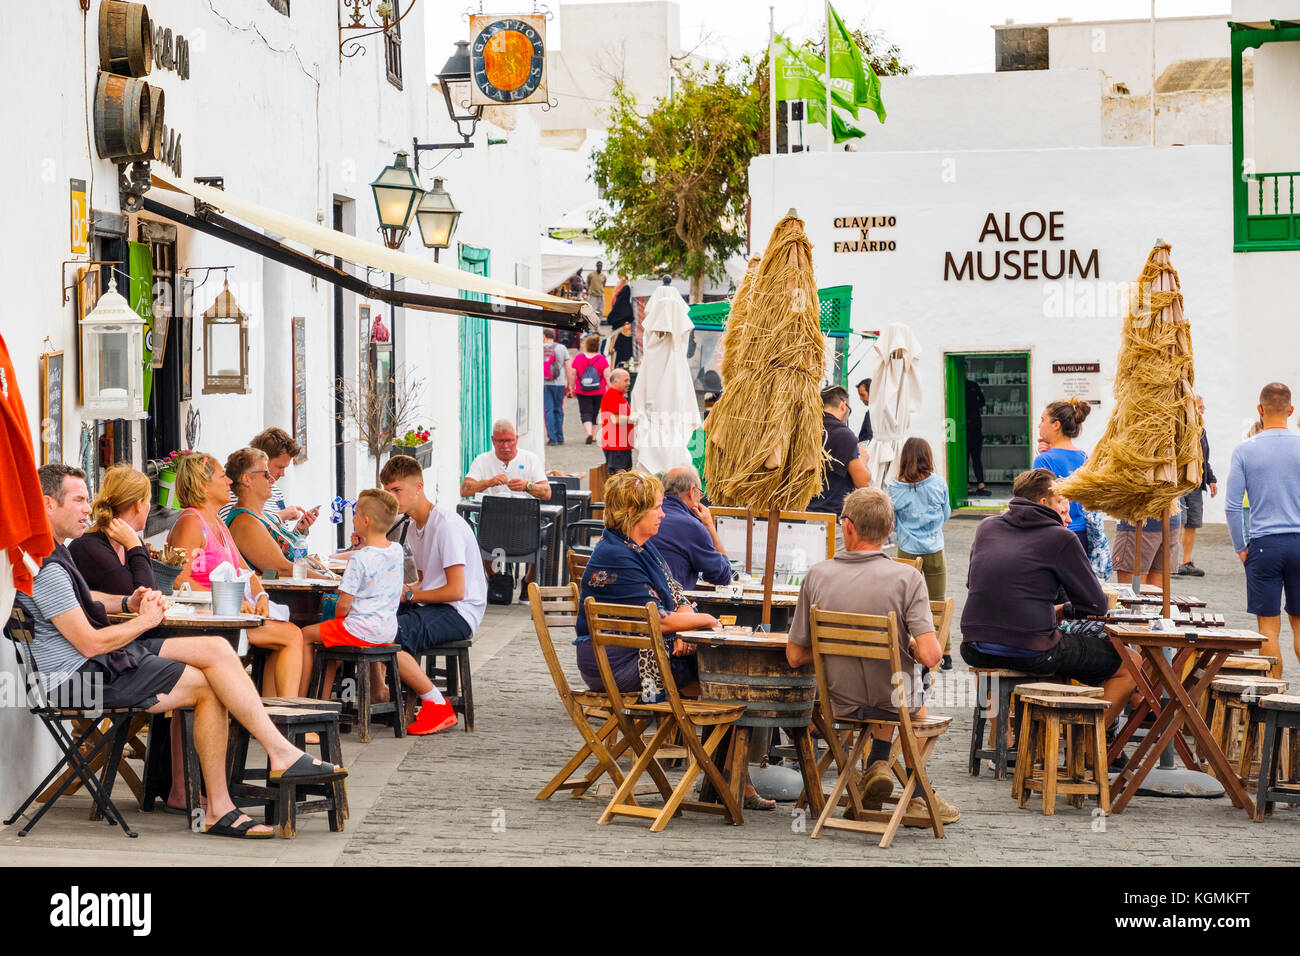 Straßenmarkt in Teguise, Lanzarote, Kanarische Inseln. Spanien Europa Stockfoto